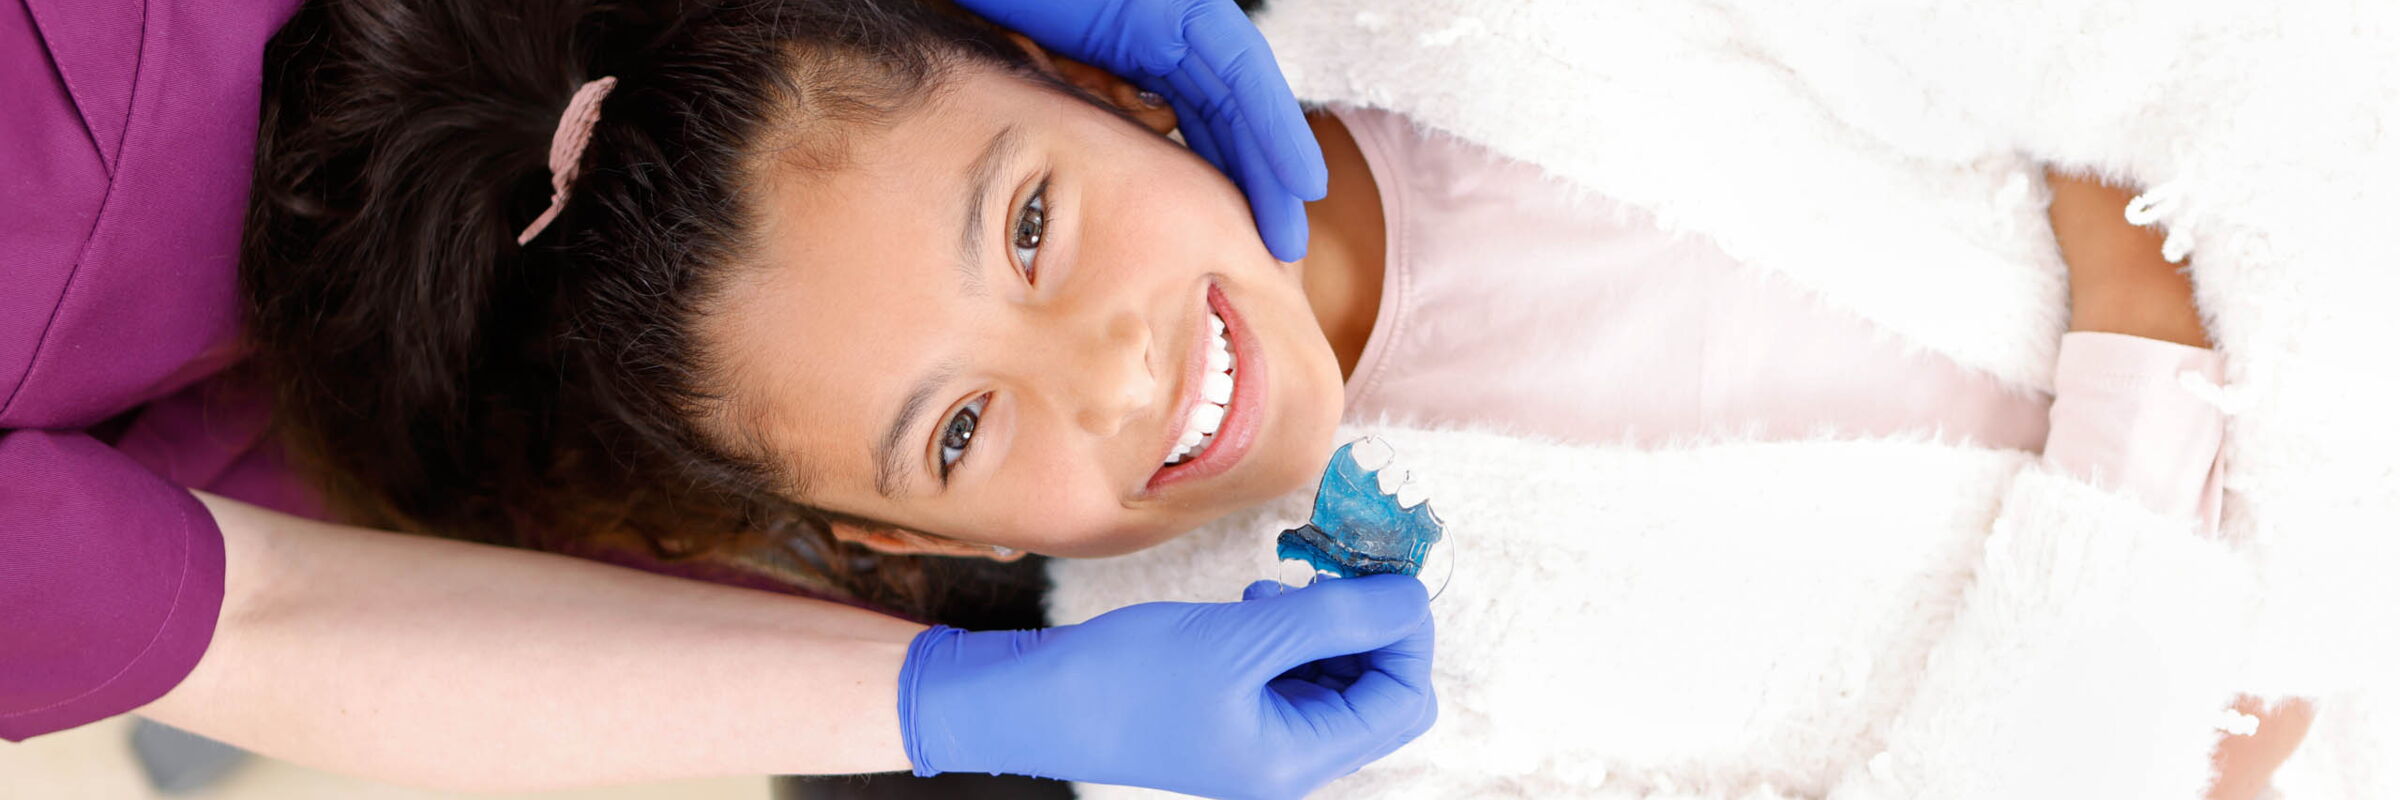 Kieferorthopädie für Kinder | Zahnarztpraxis Klenke in Baunatal